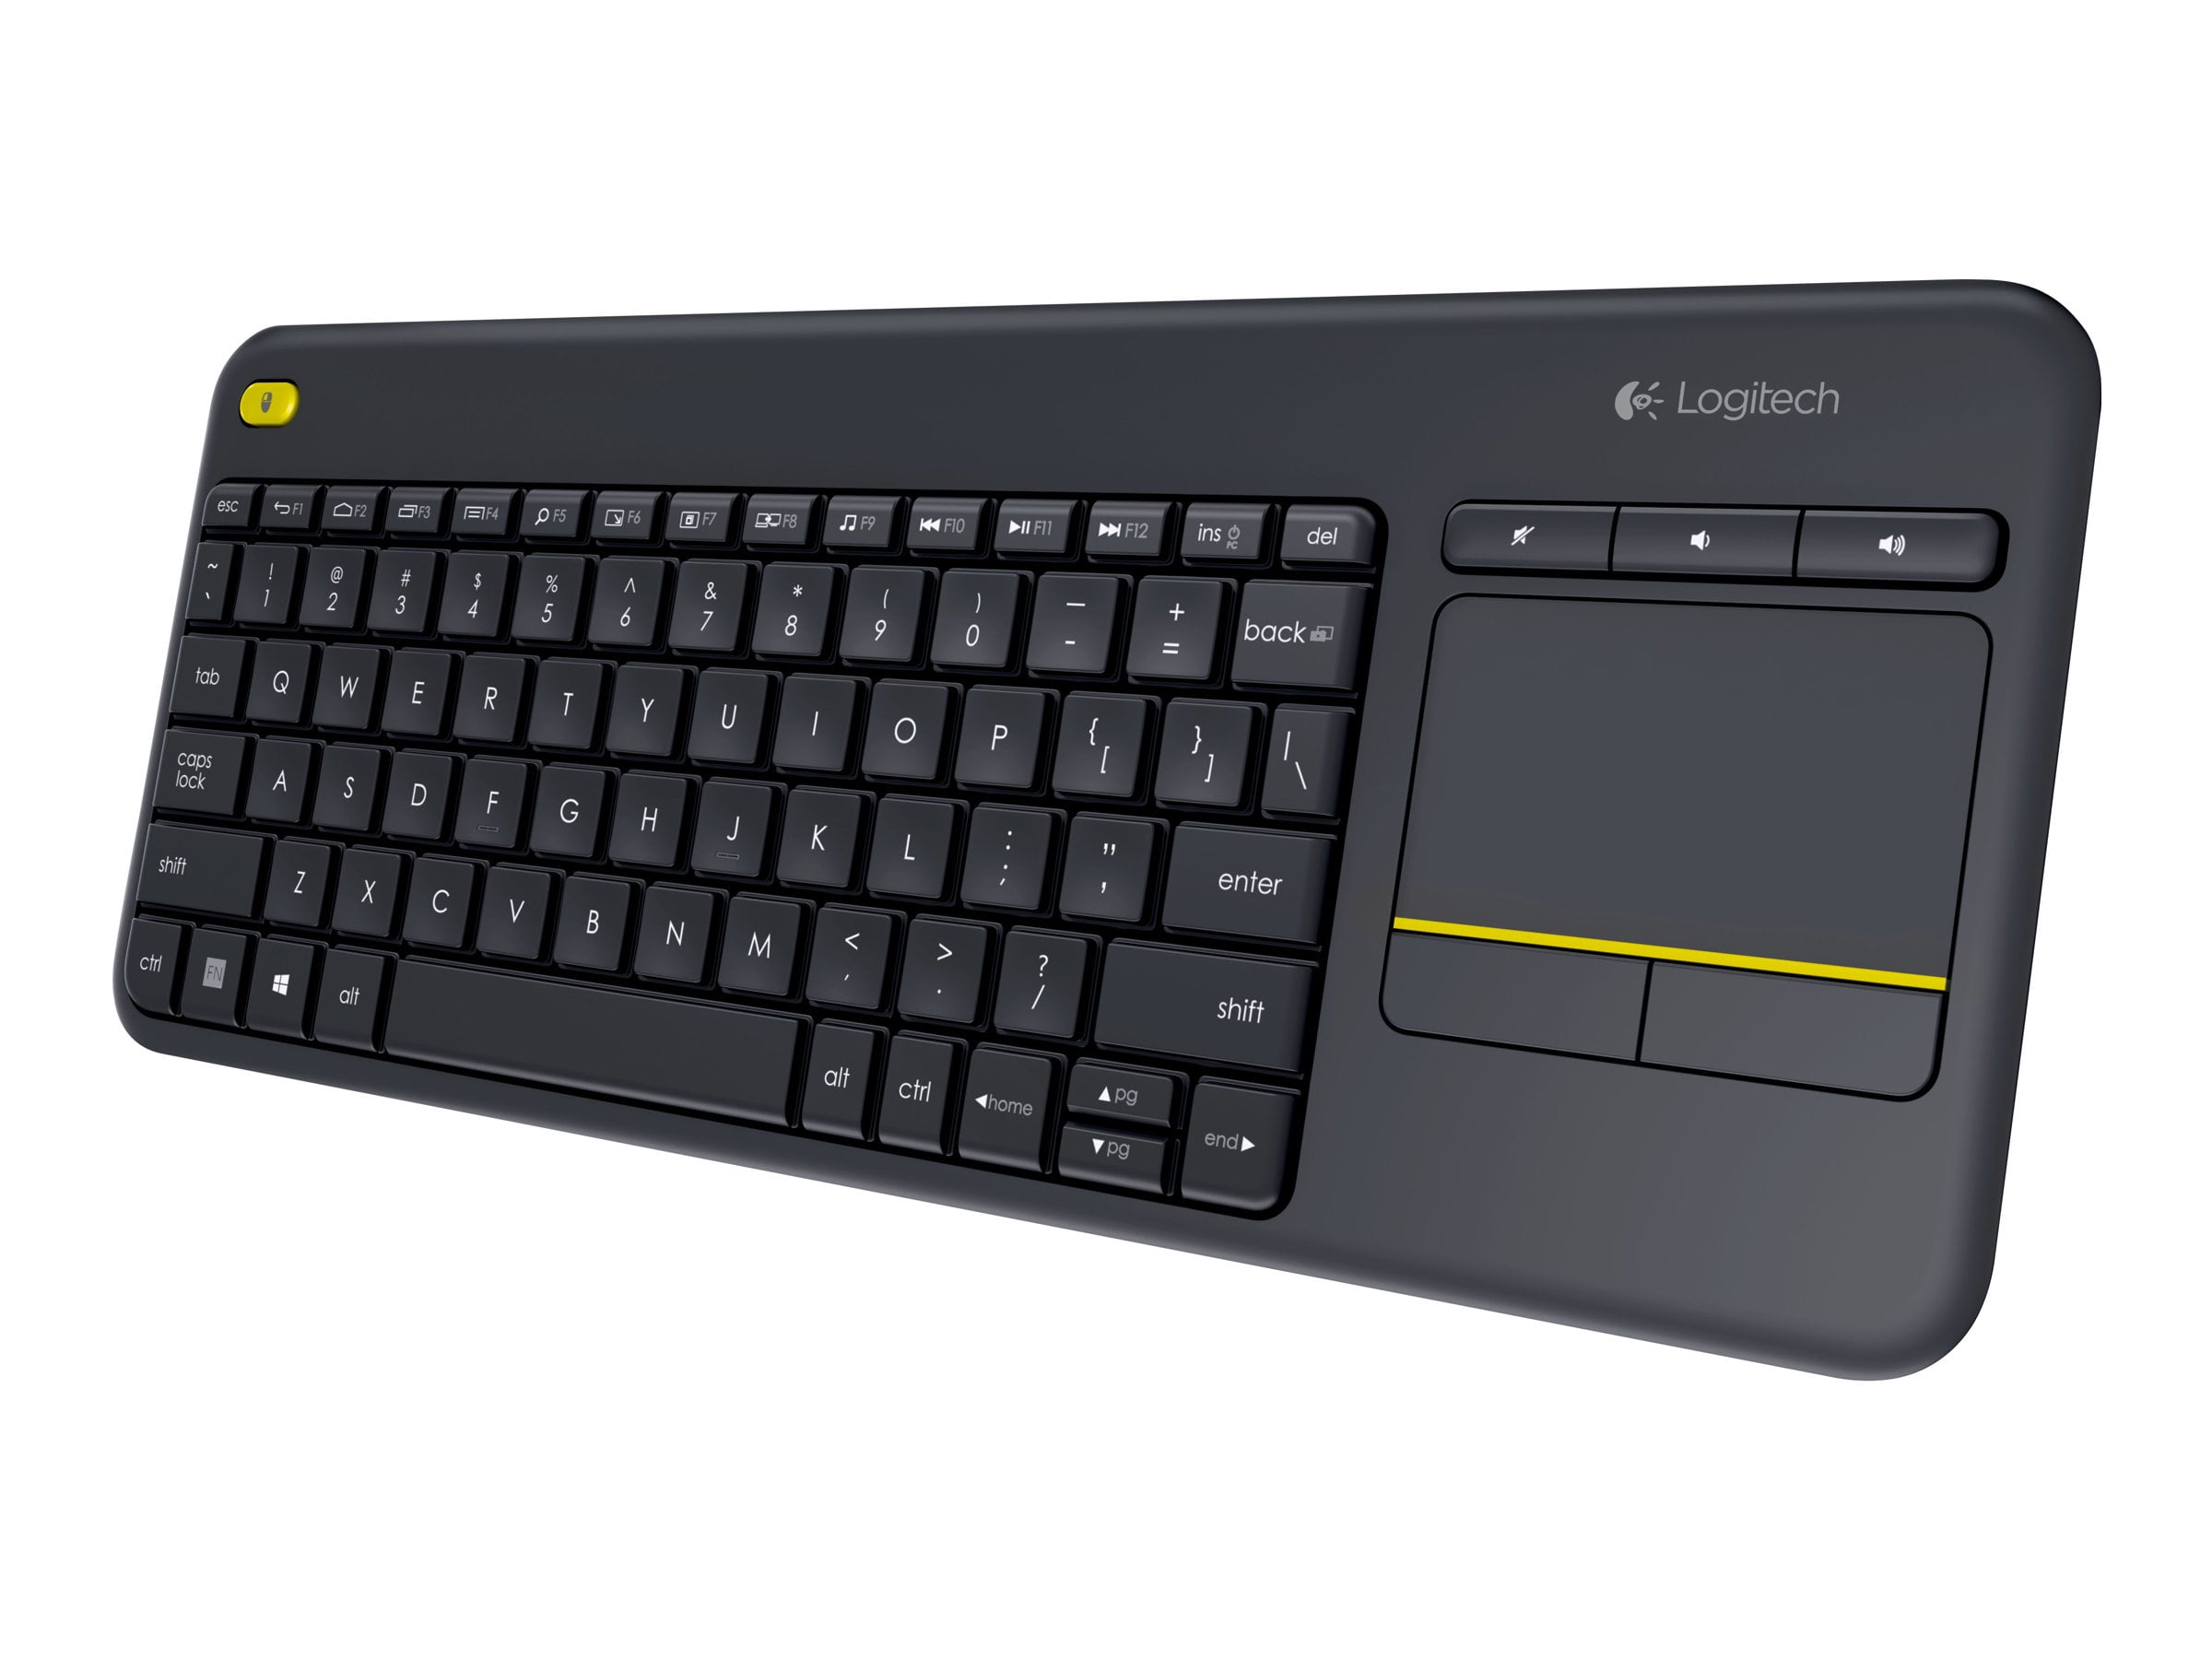 Logitech WIRELESS KEYBOARD K400 PLUS HTPC keyboard PC connected TVs -